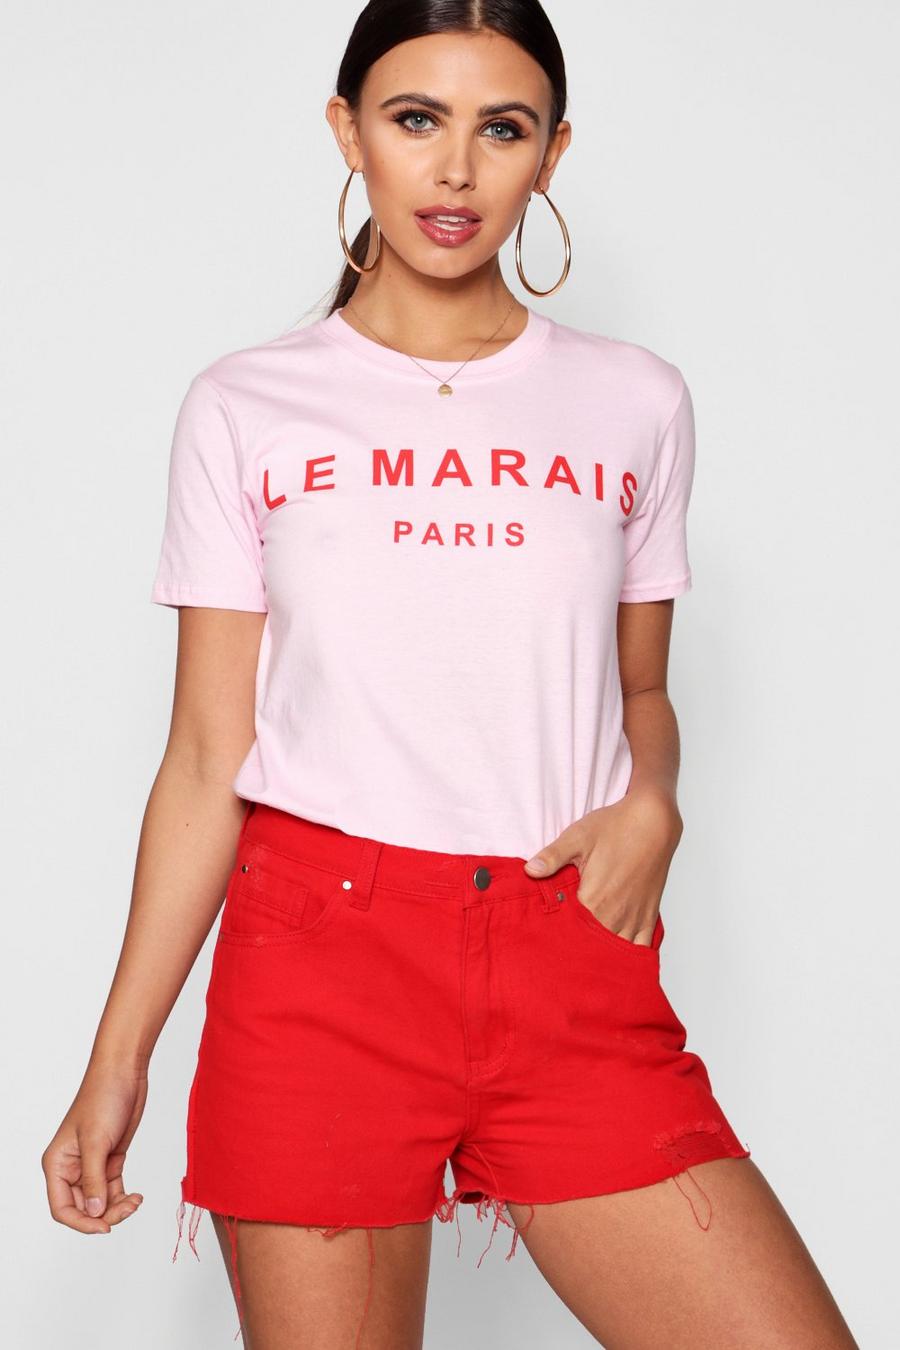 Camiseta con eslogan de Marais Paris petite image number 1